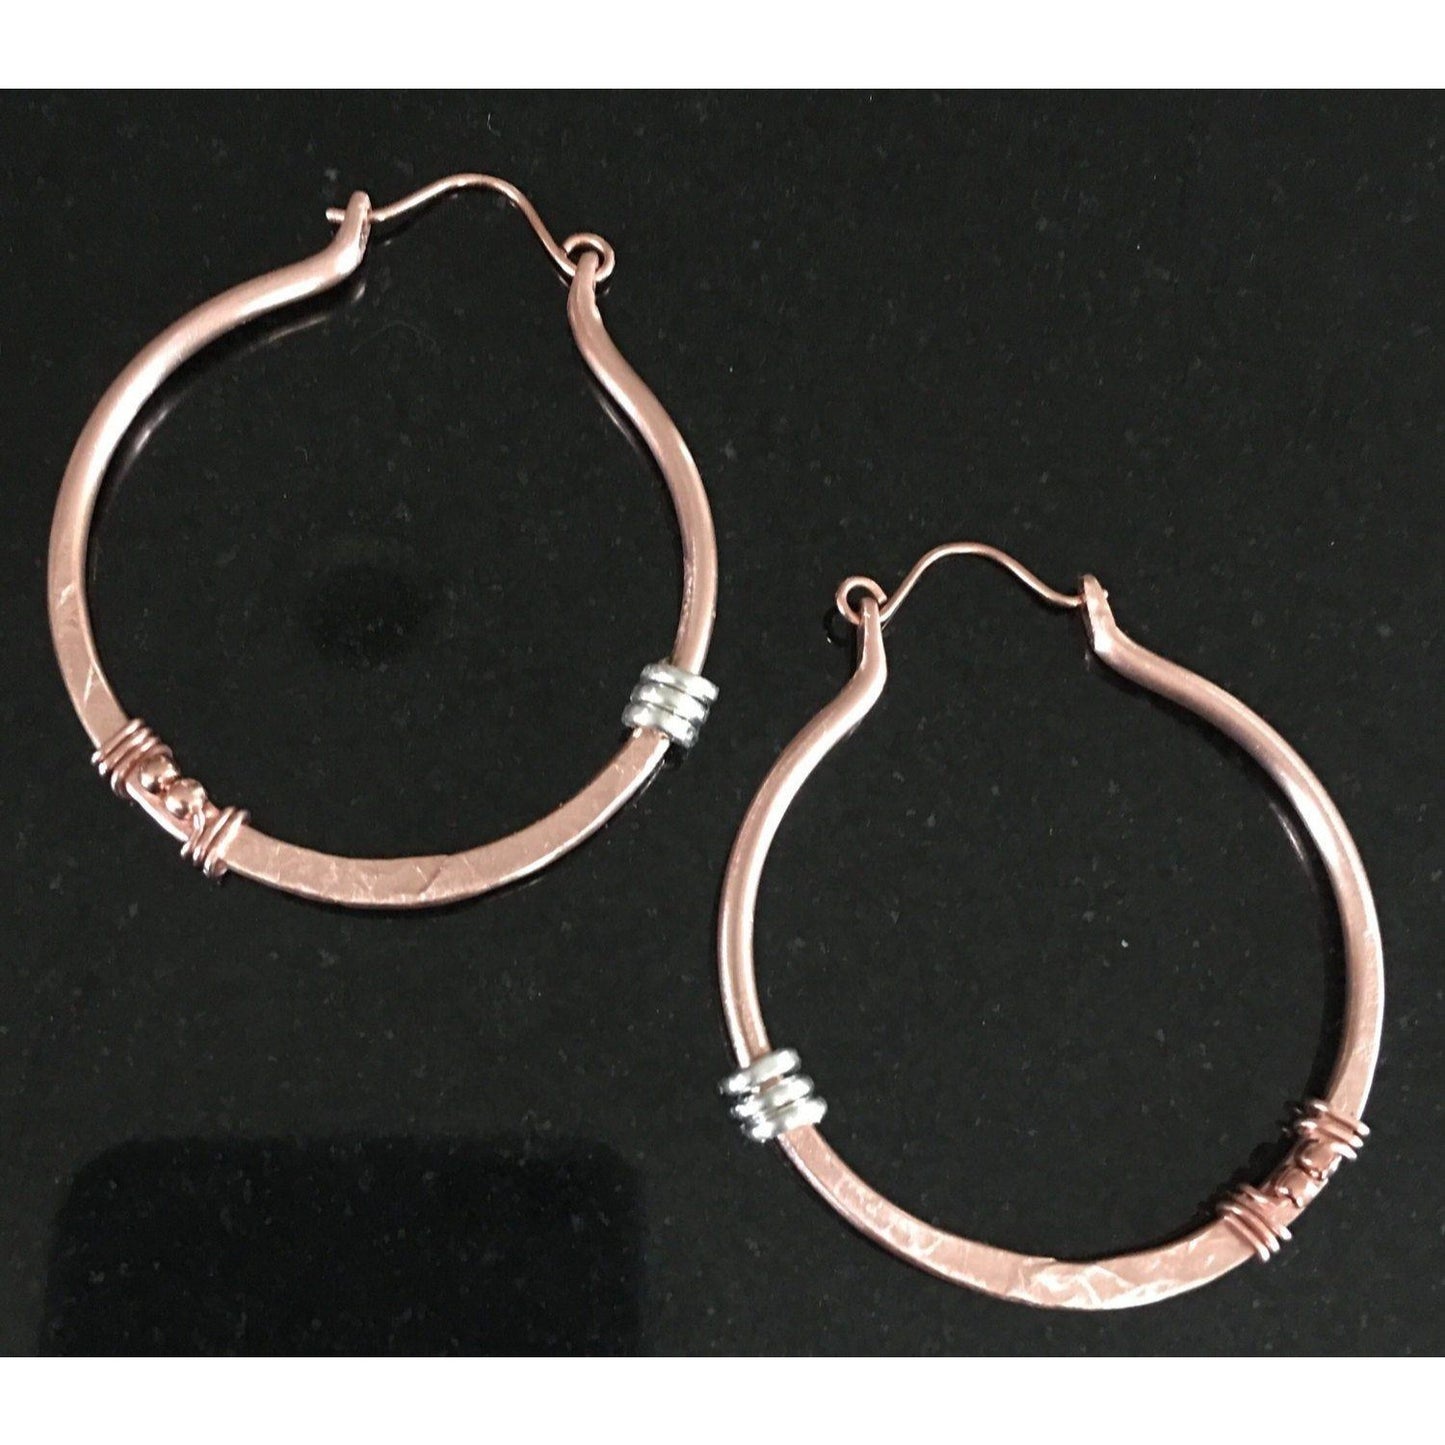 Copper Hoop Earrings, Rustic Earrings, Hammered Copper, Boho Earrings, Bohemian Earrings, Copper Jewelry